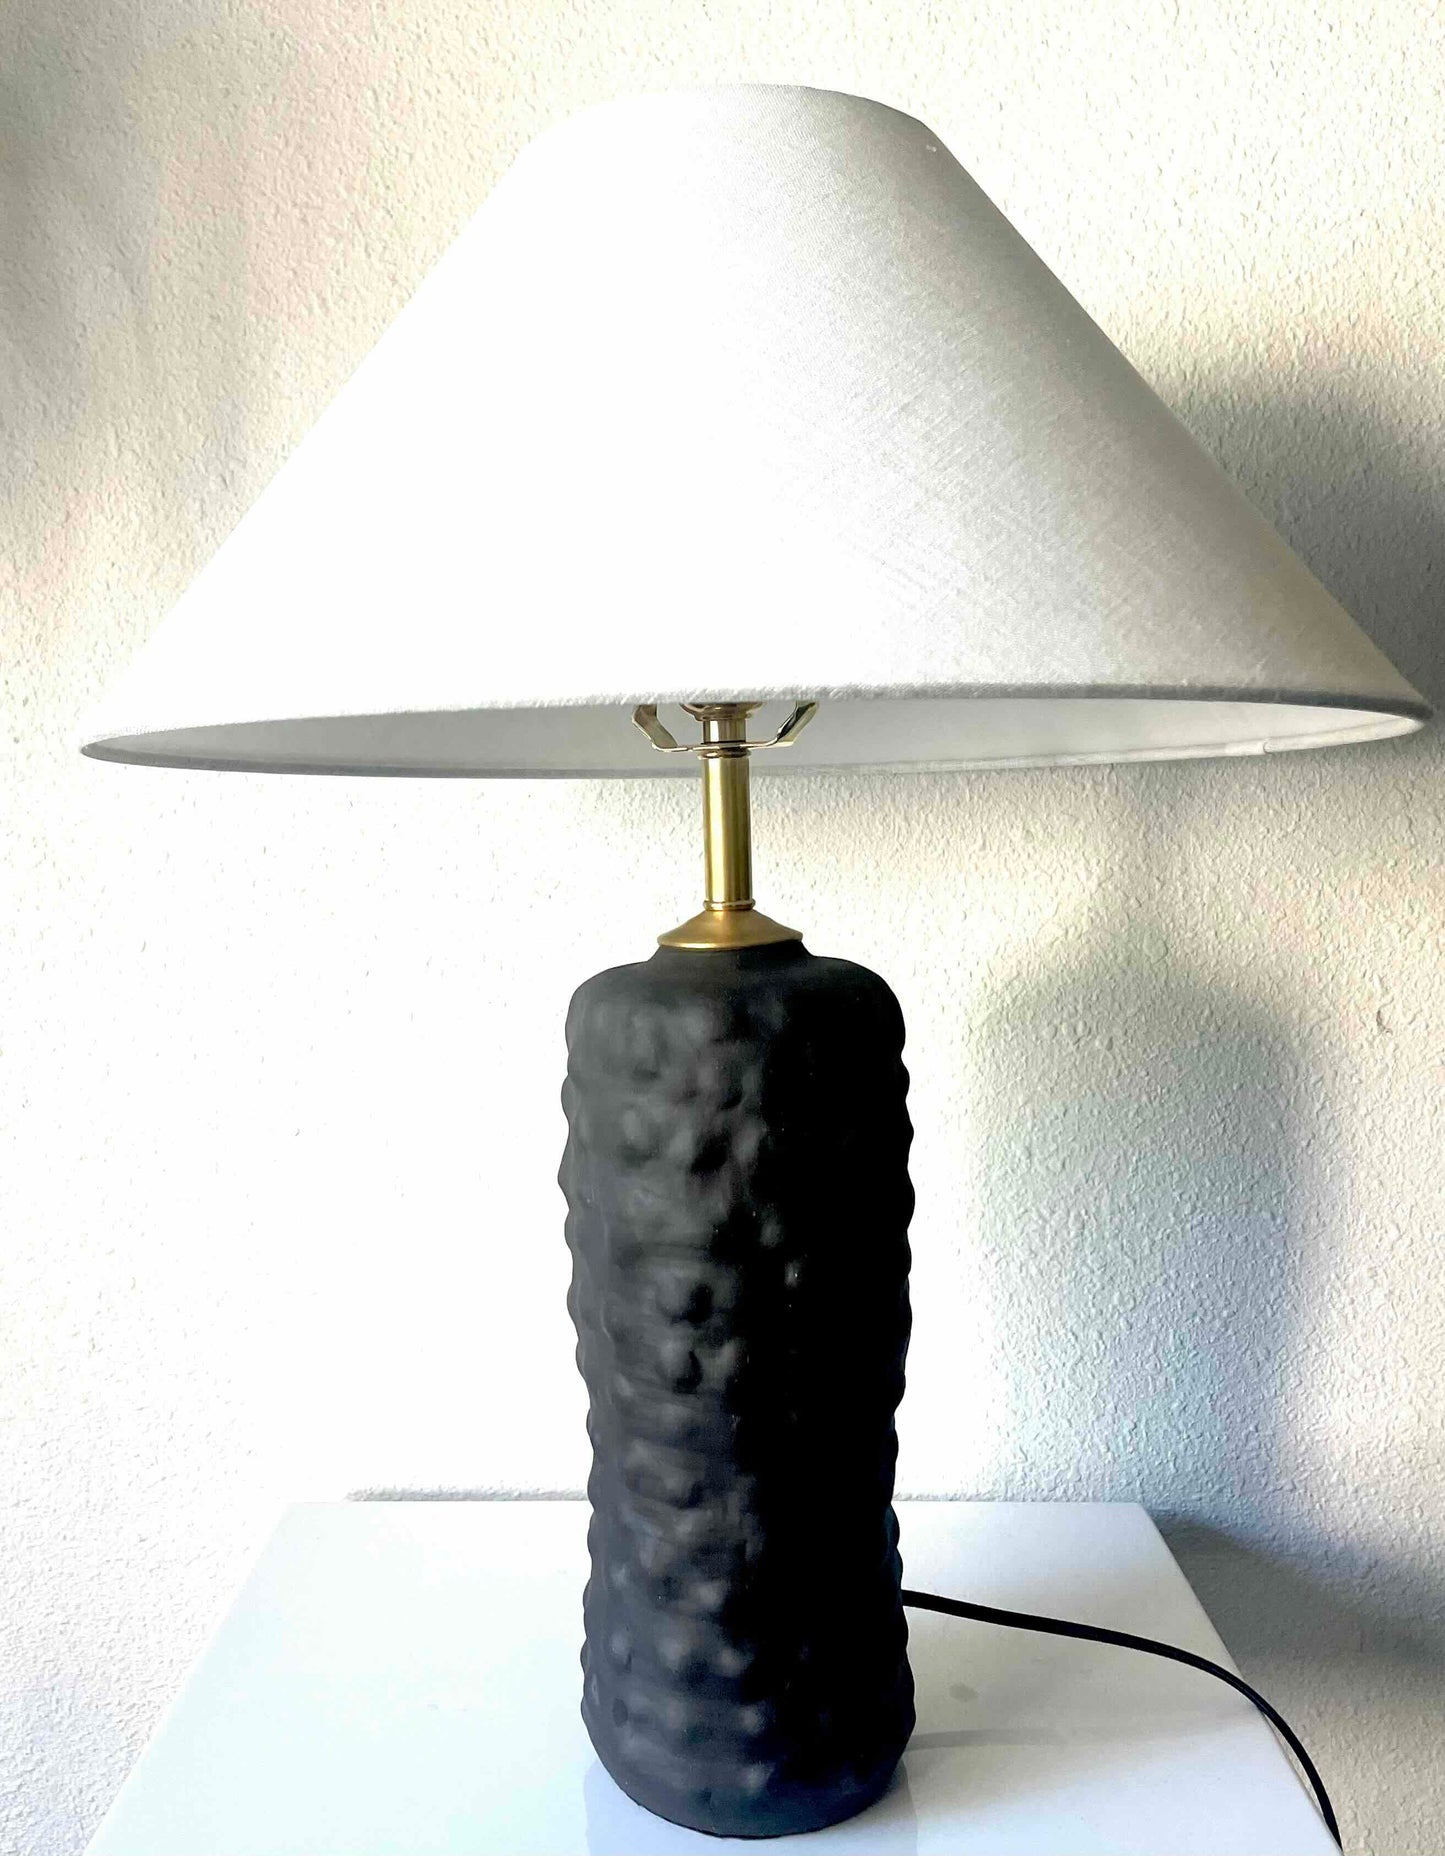 Bumpy Lamp